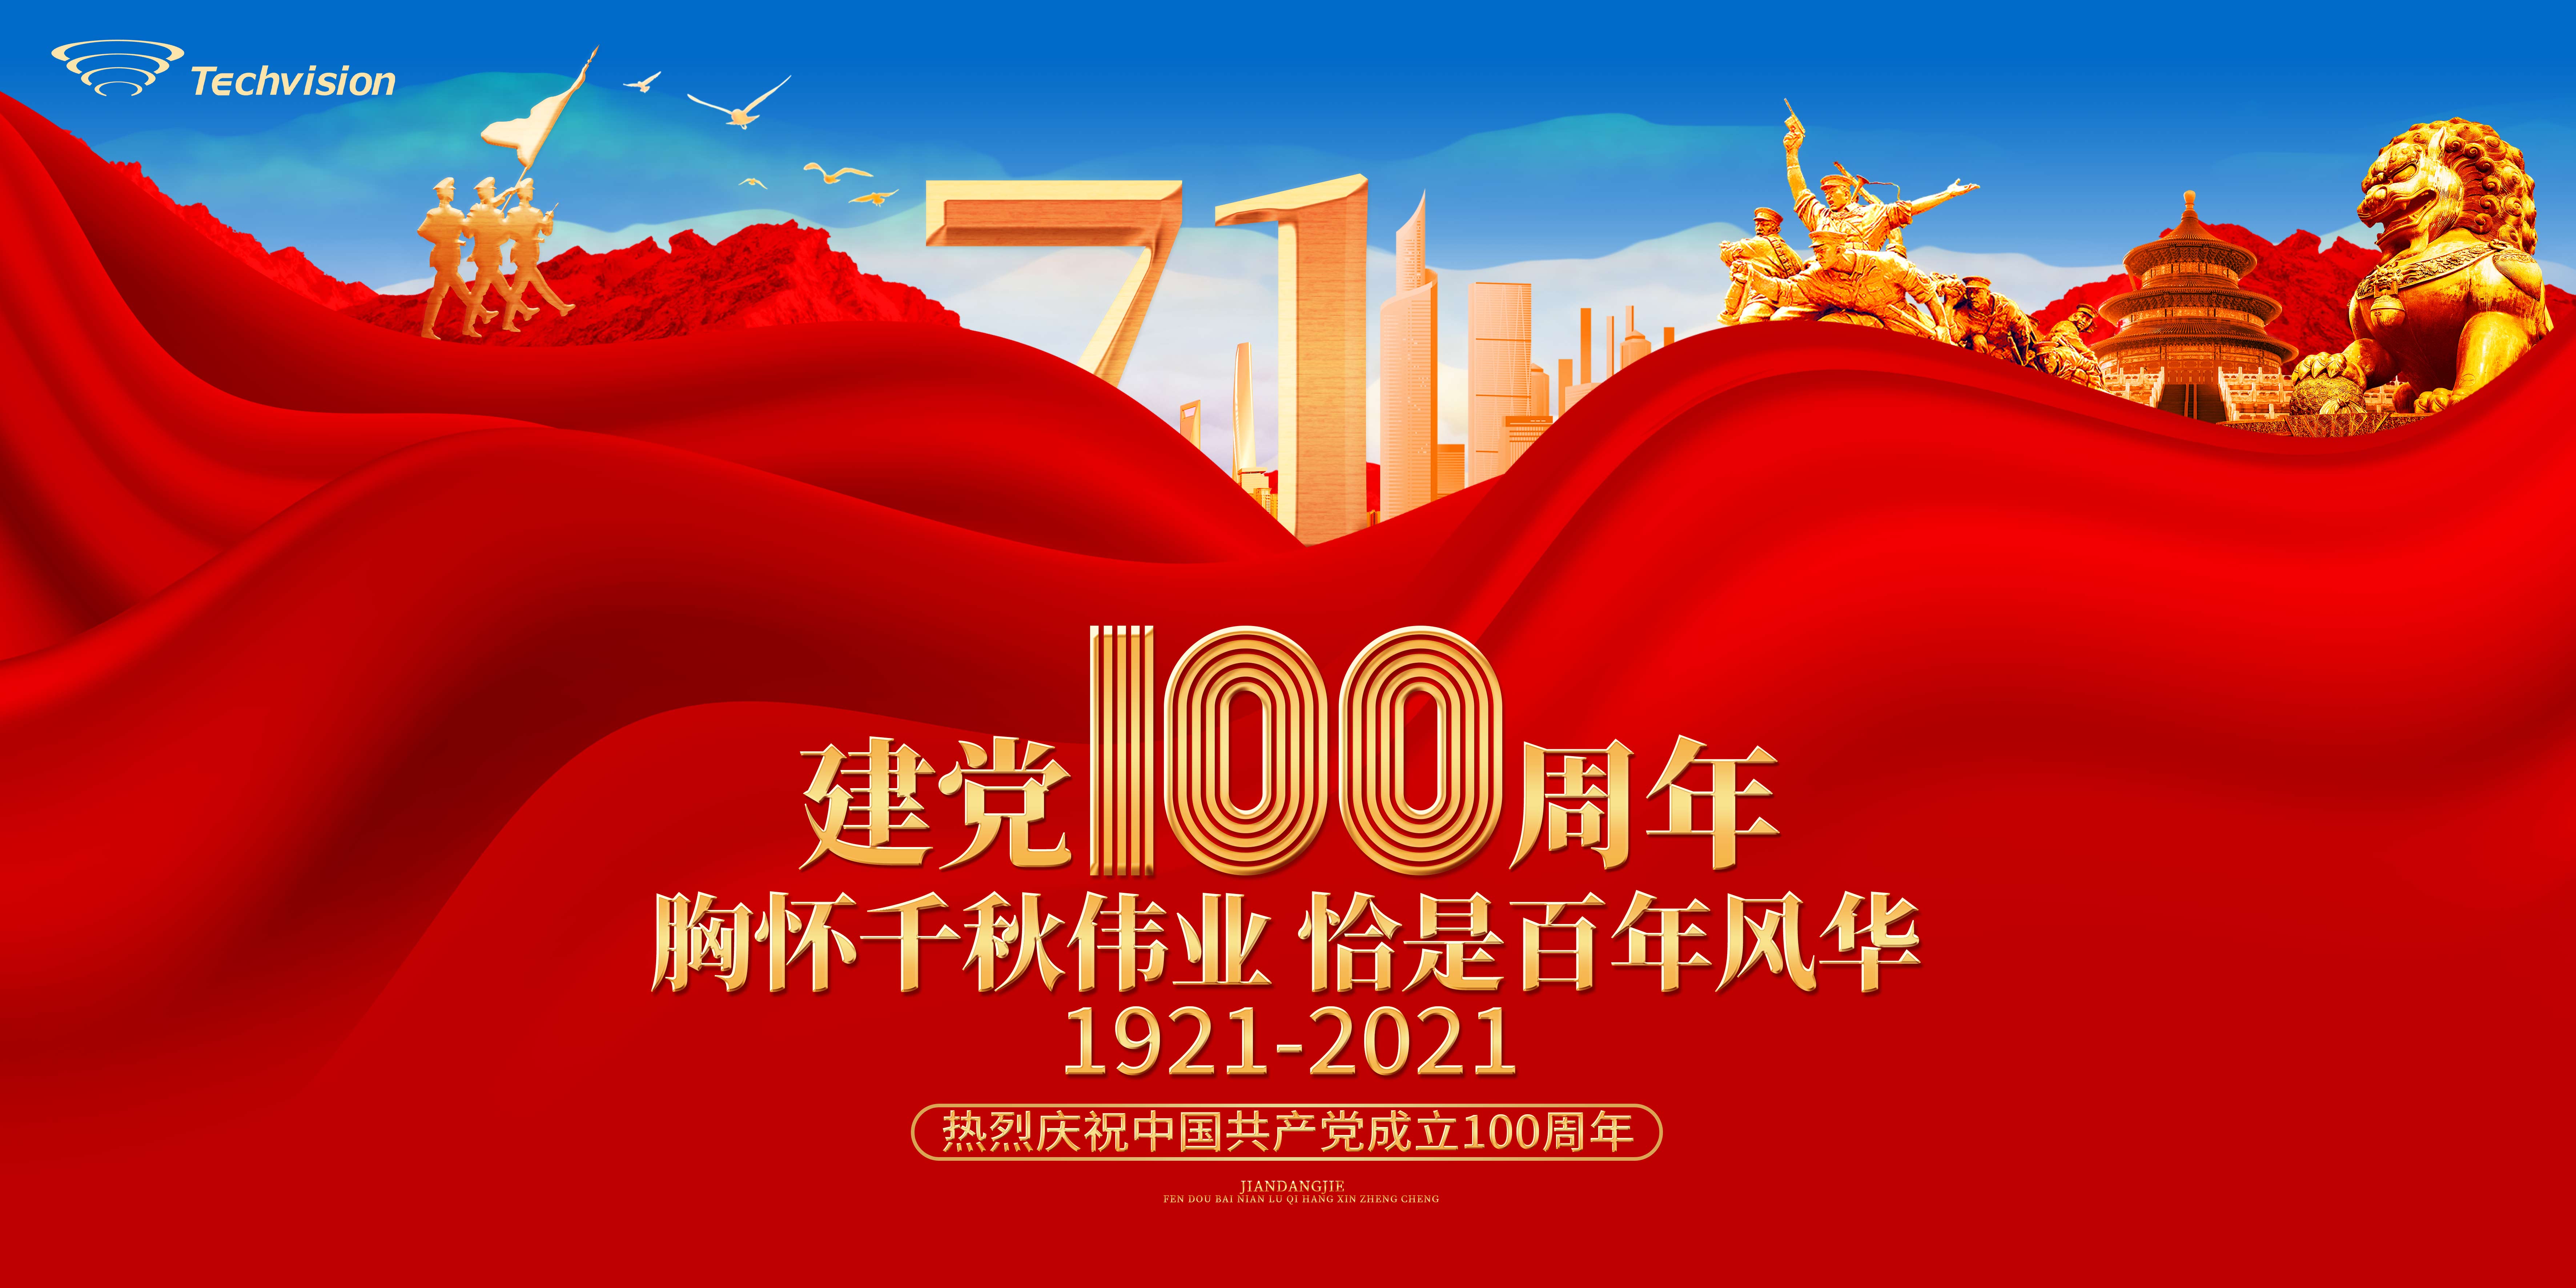 永利澳门6774.cσm庆祝中国共产党建党100周年